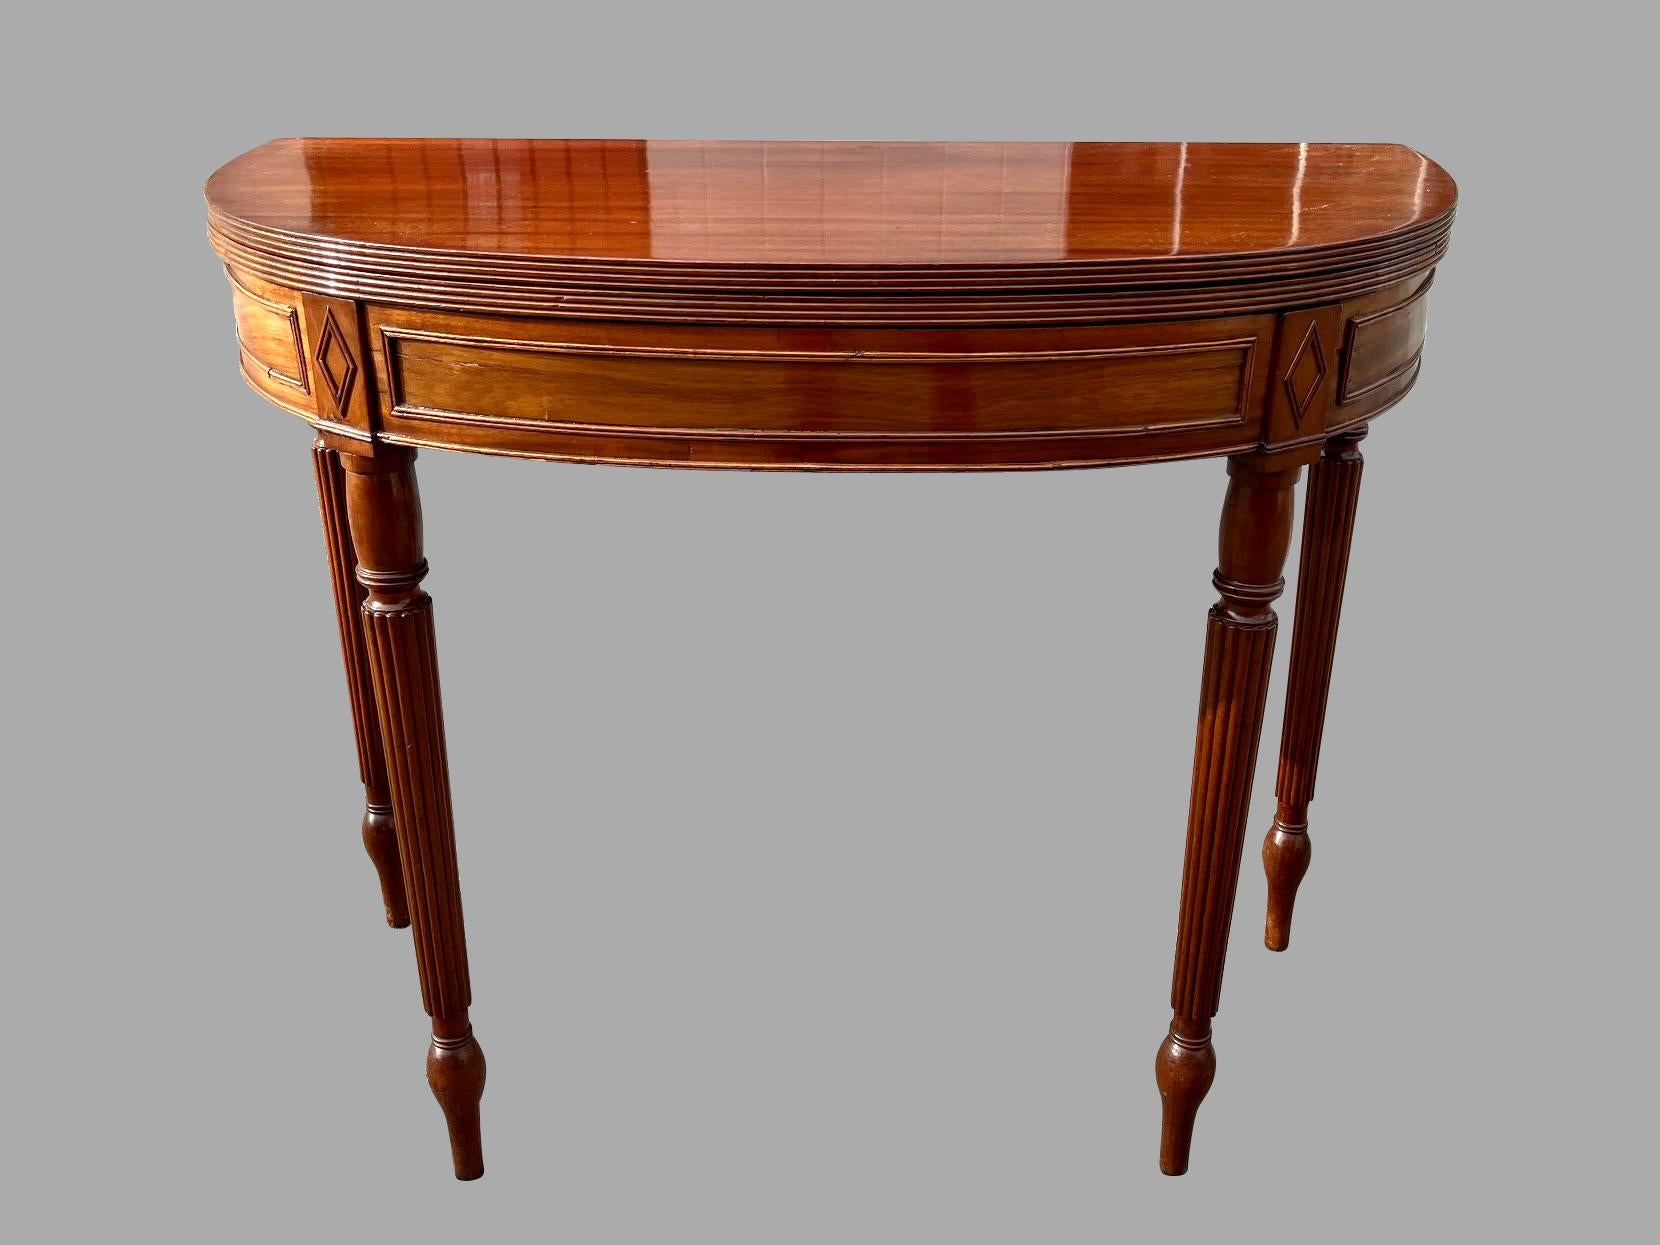 Ein feiner englischer Flip-Top-Spieltisch aus der Regency-Periode. Die massive Mahagoni-Platte mit geriffeltem Rand liegt auf einem geschwungenen, mit Zierleisten verzierten Sockel, der auf geriffelten Beinen steht, die in länglichen Tupie-Füßen